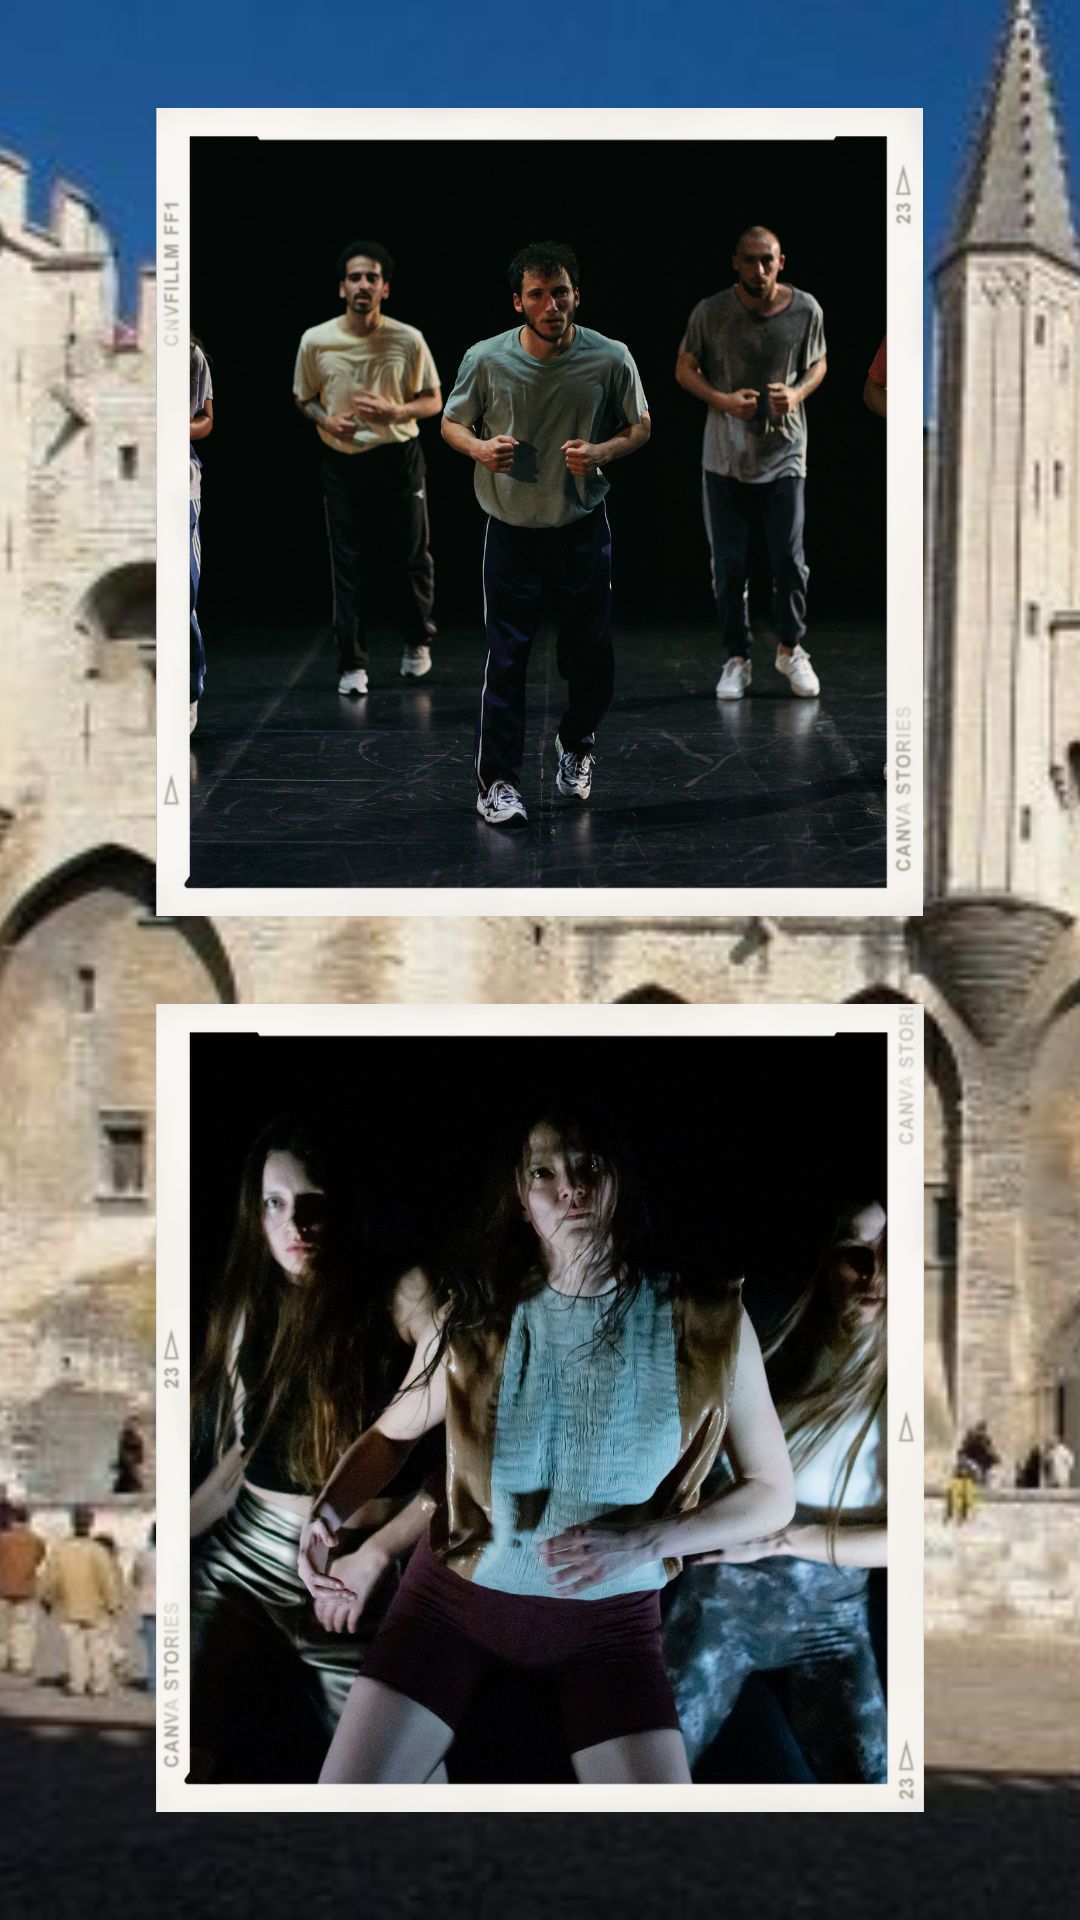 L'été des festivals #3 : "Carlier, Mannès et Turine investissent Avignon avec deux spectacles de danse résolument contemporaine et sans compromis"